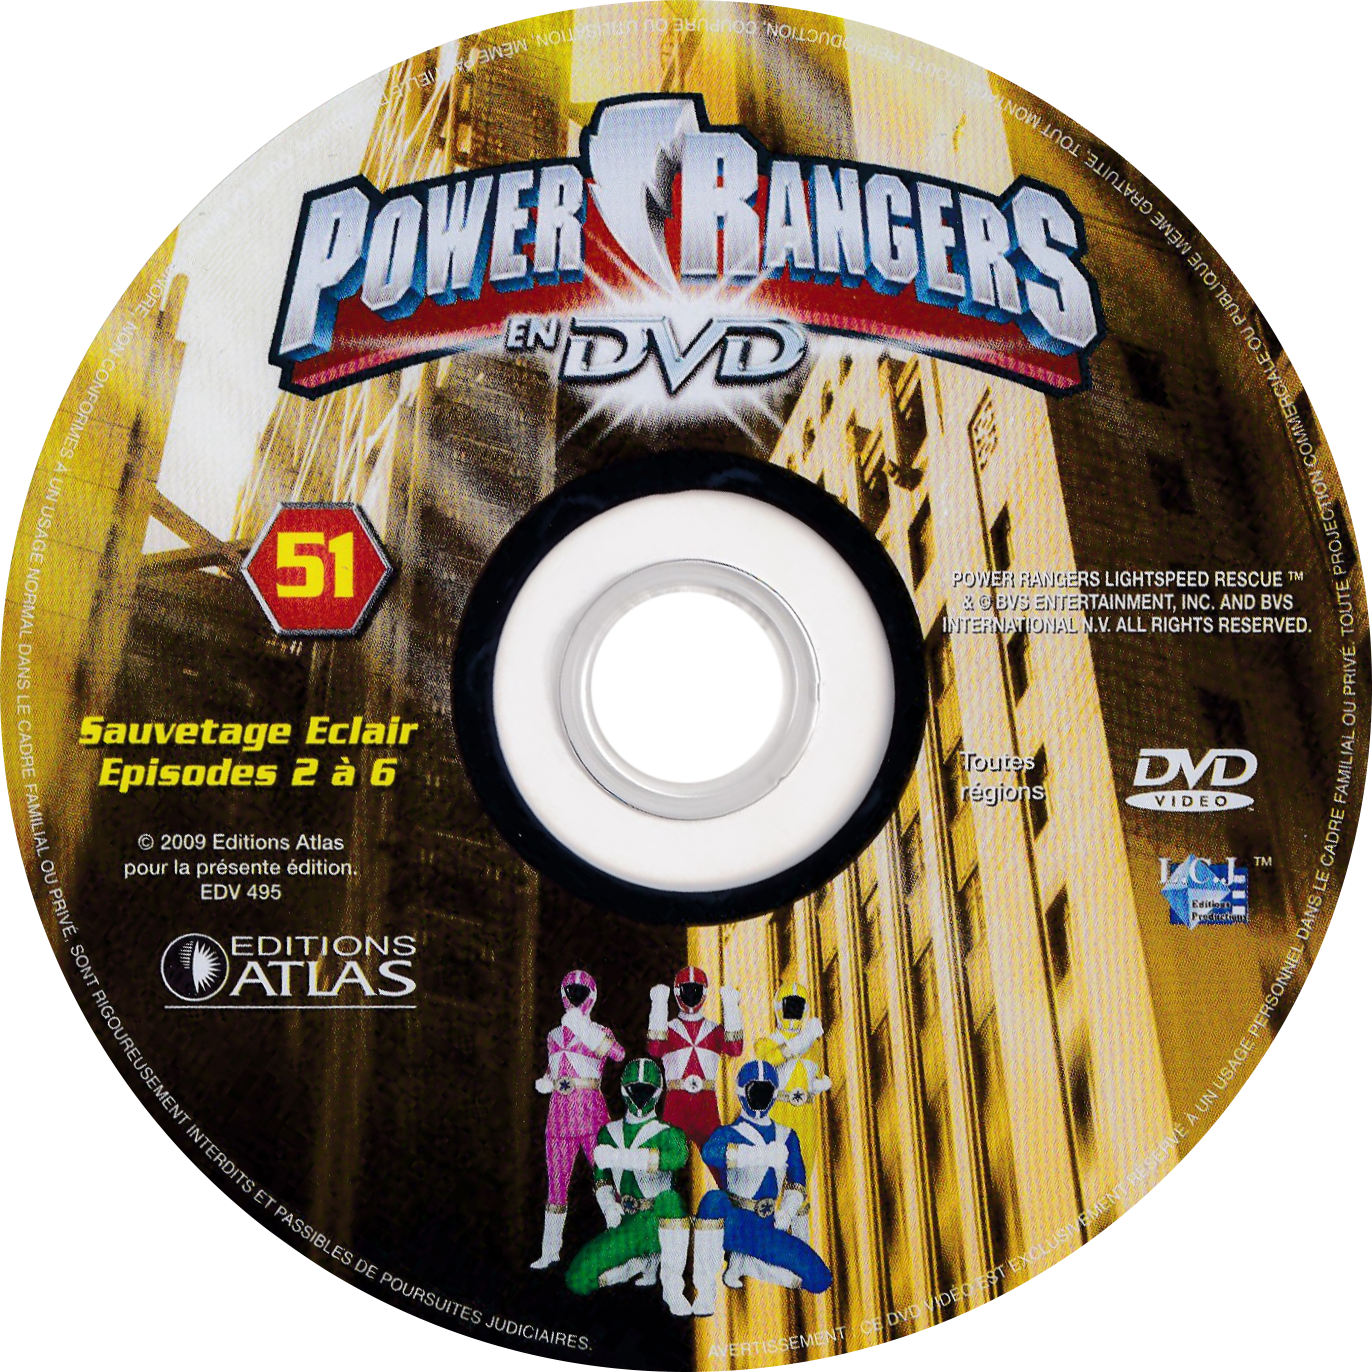 Power Rangers en DVD n°51